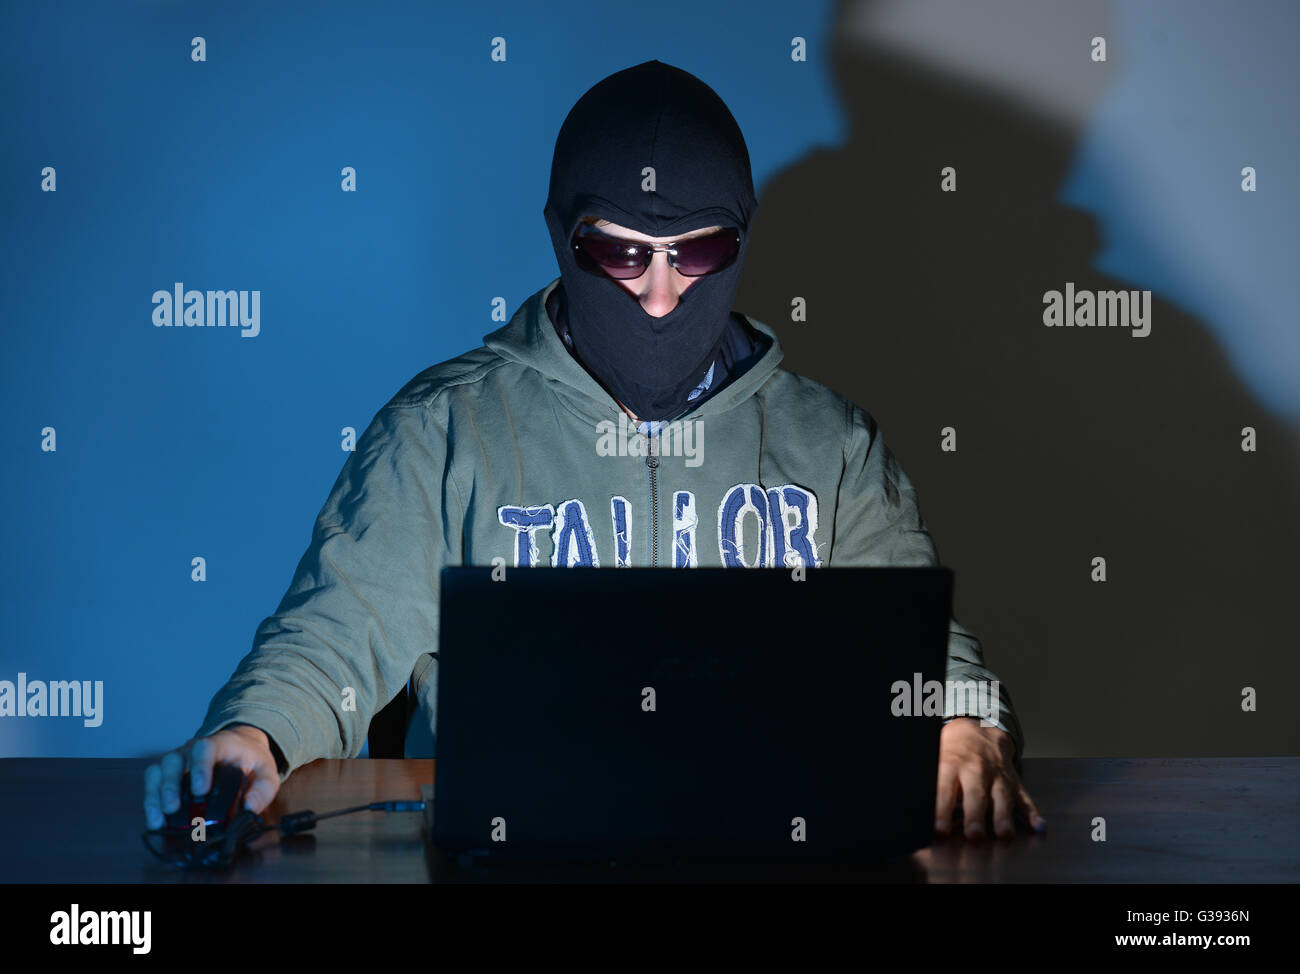 Cyber-Kriminalität Stockfoto